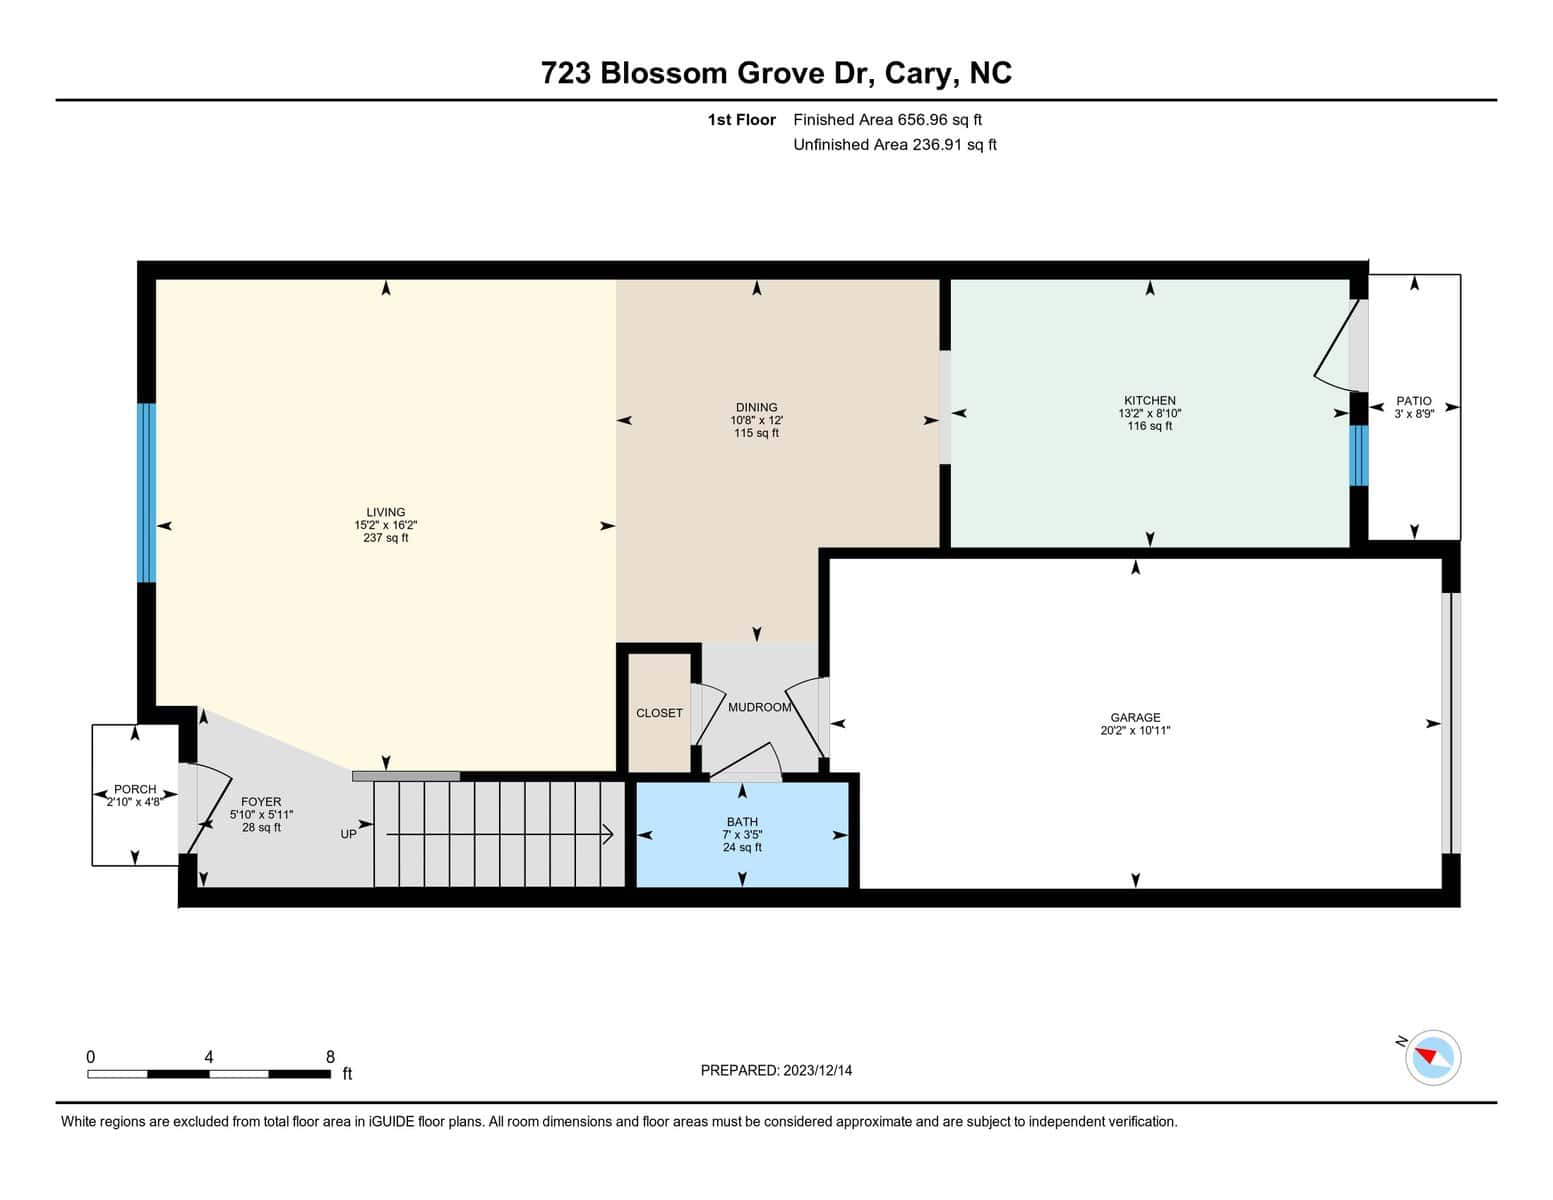 723 Blossom Grove, Cary, NC 1st floor